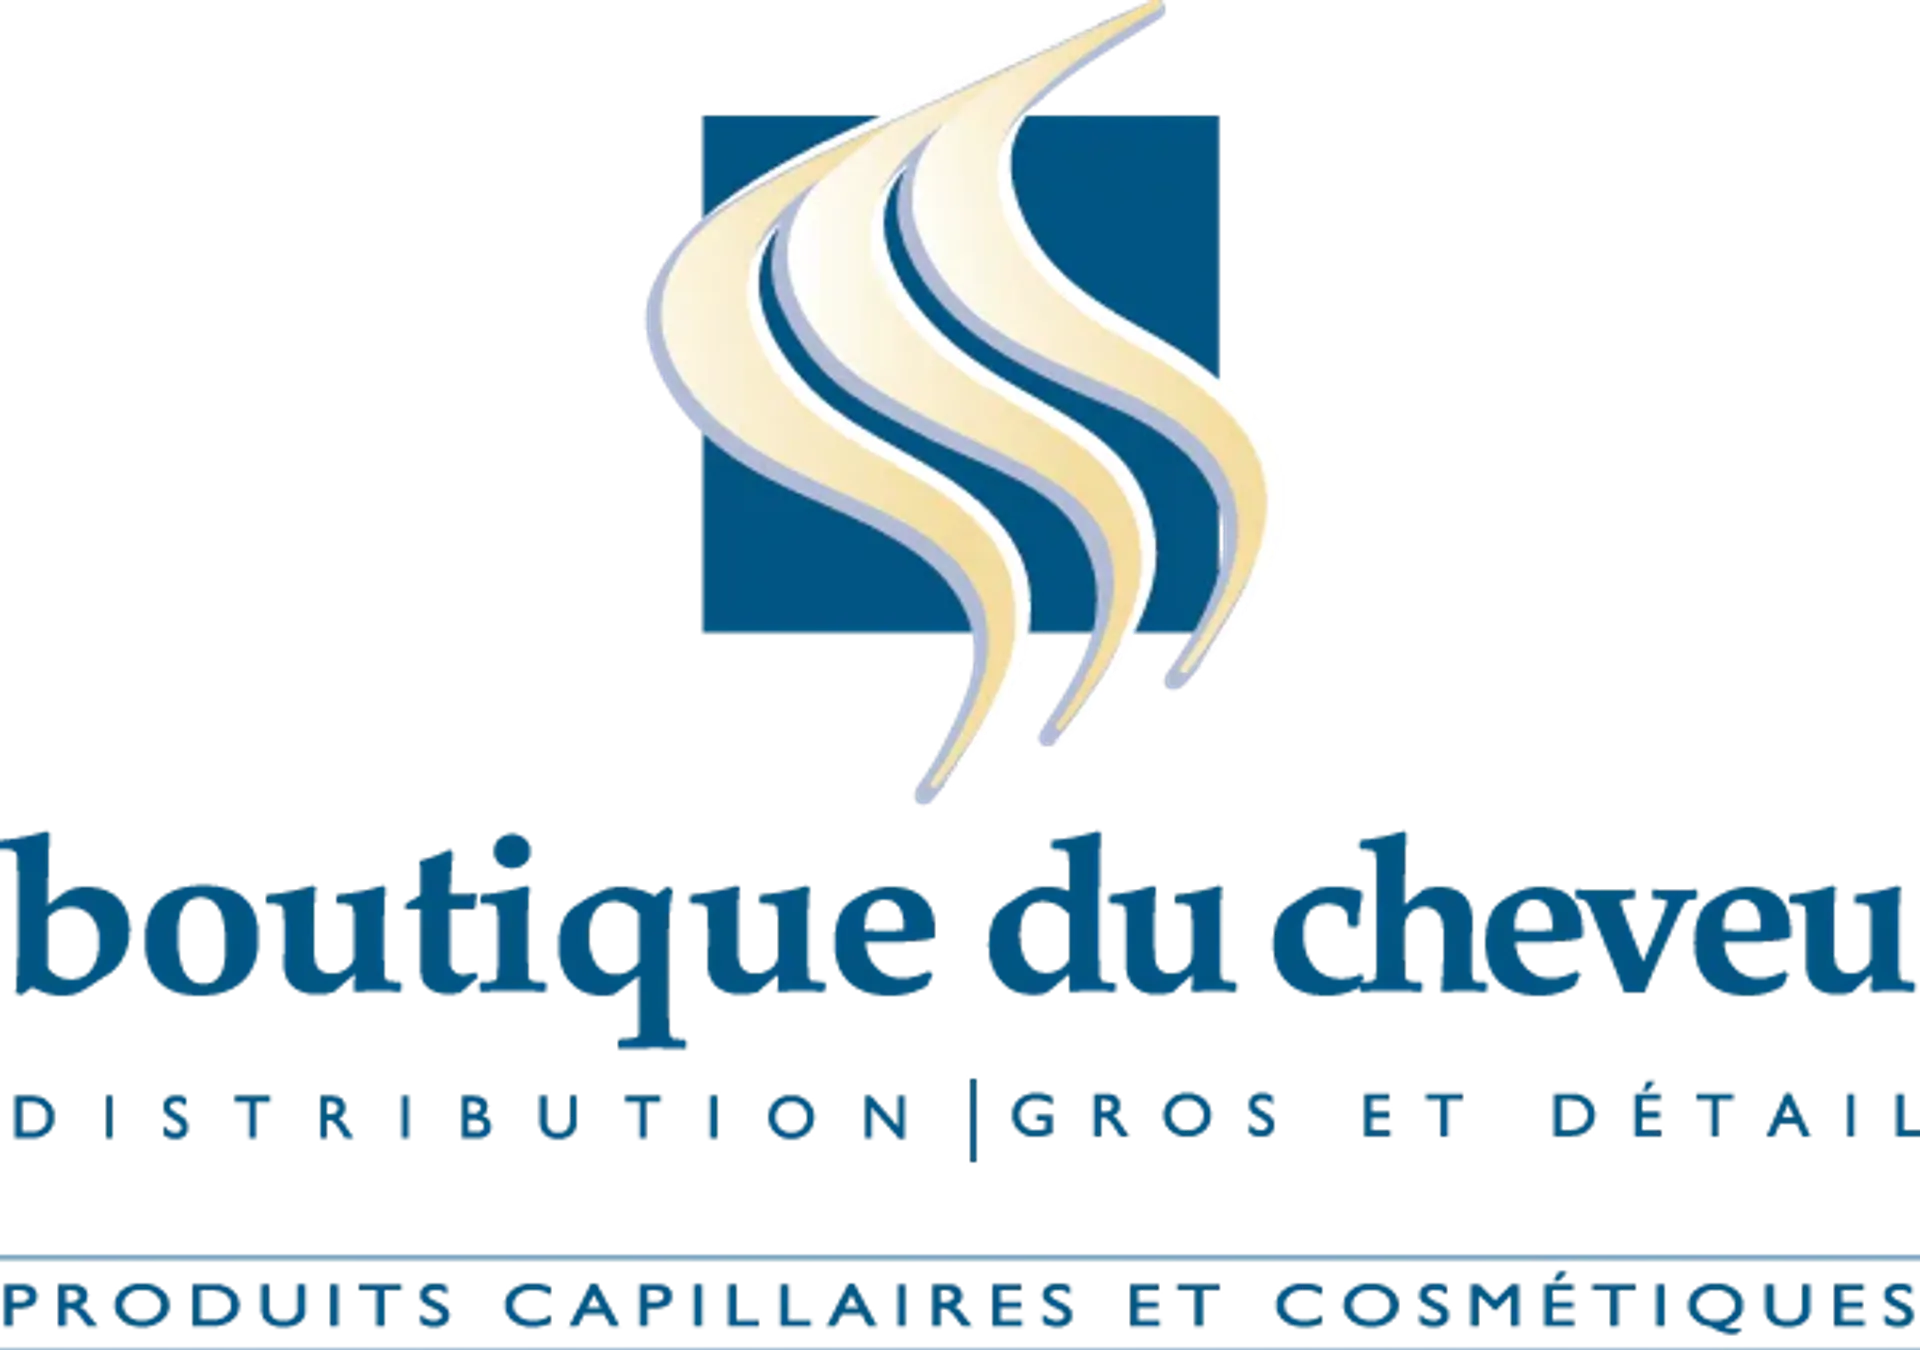 BOUTIQUE DU CHEVEUX logo de circulaire